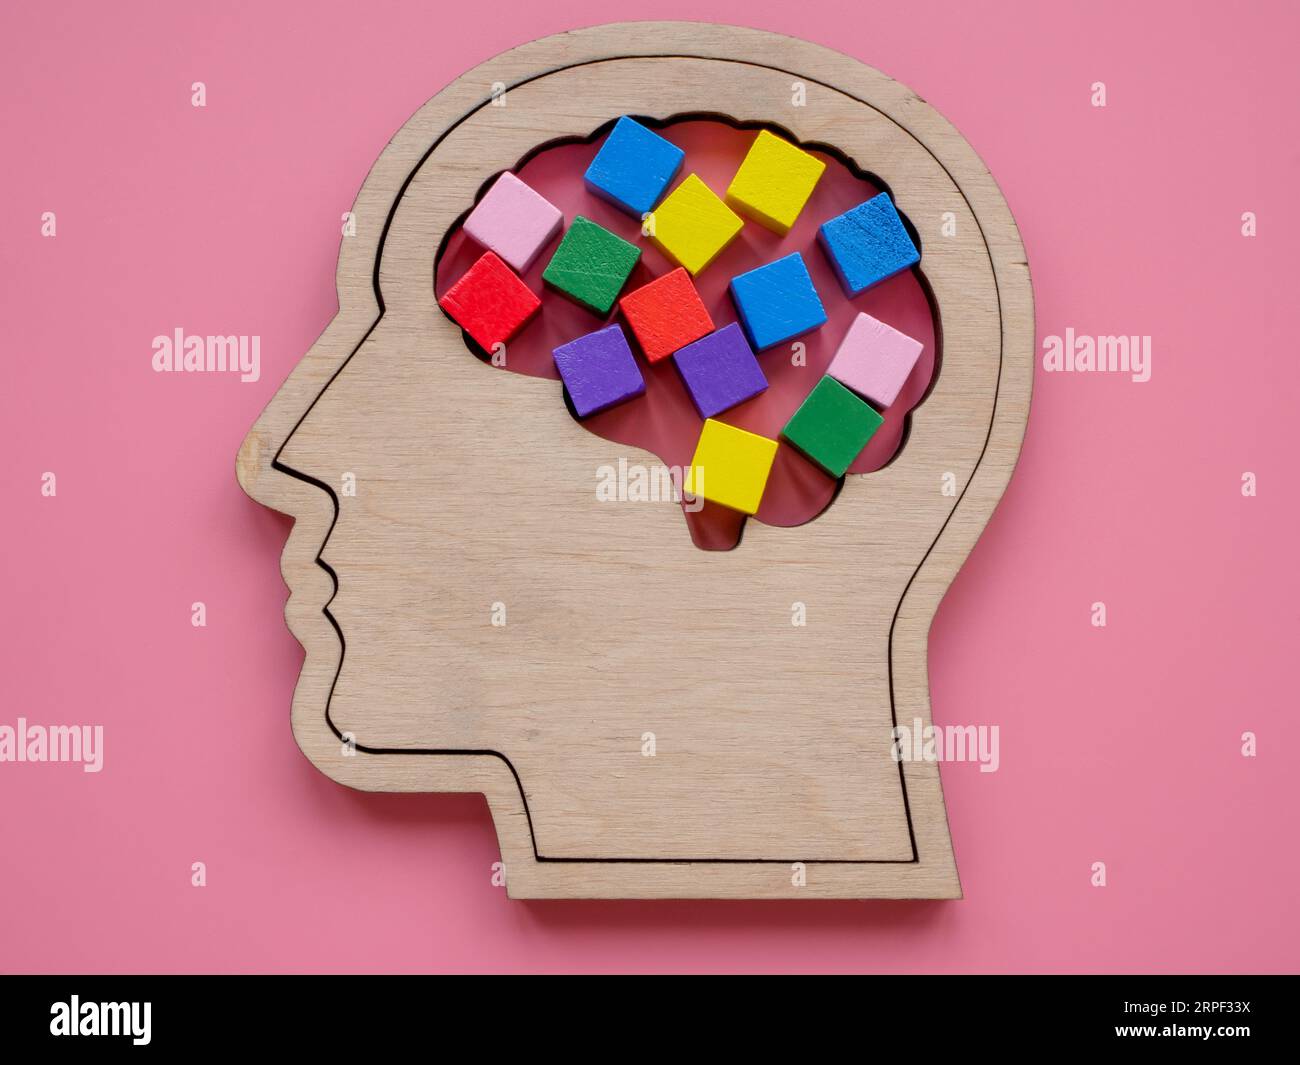 Kopfform und bunte Würfel als Symbol für Neurodiversität oder Kreativität. Stockfoto